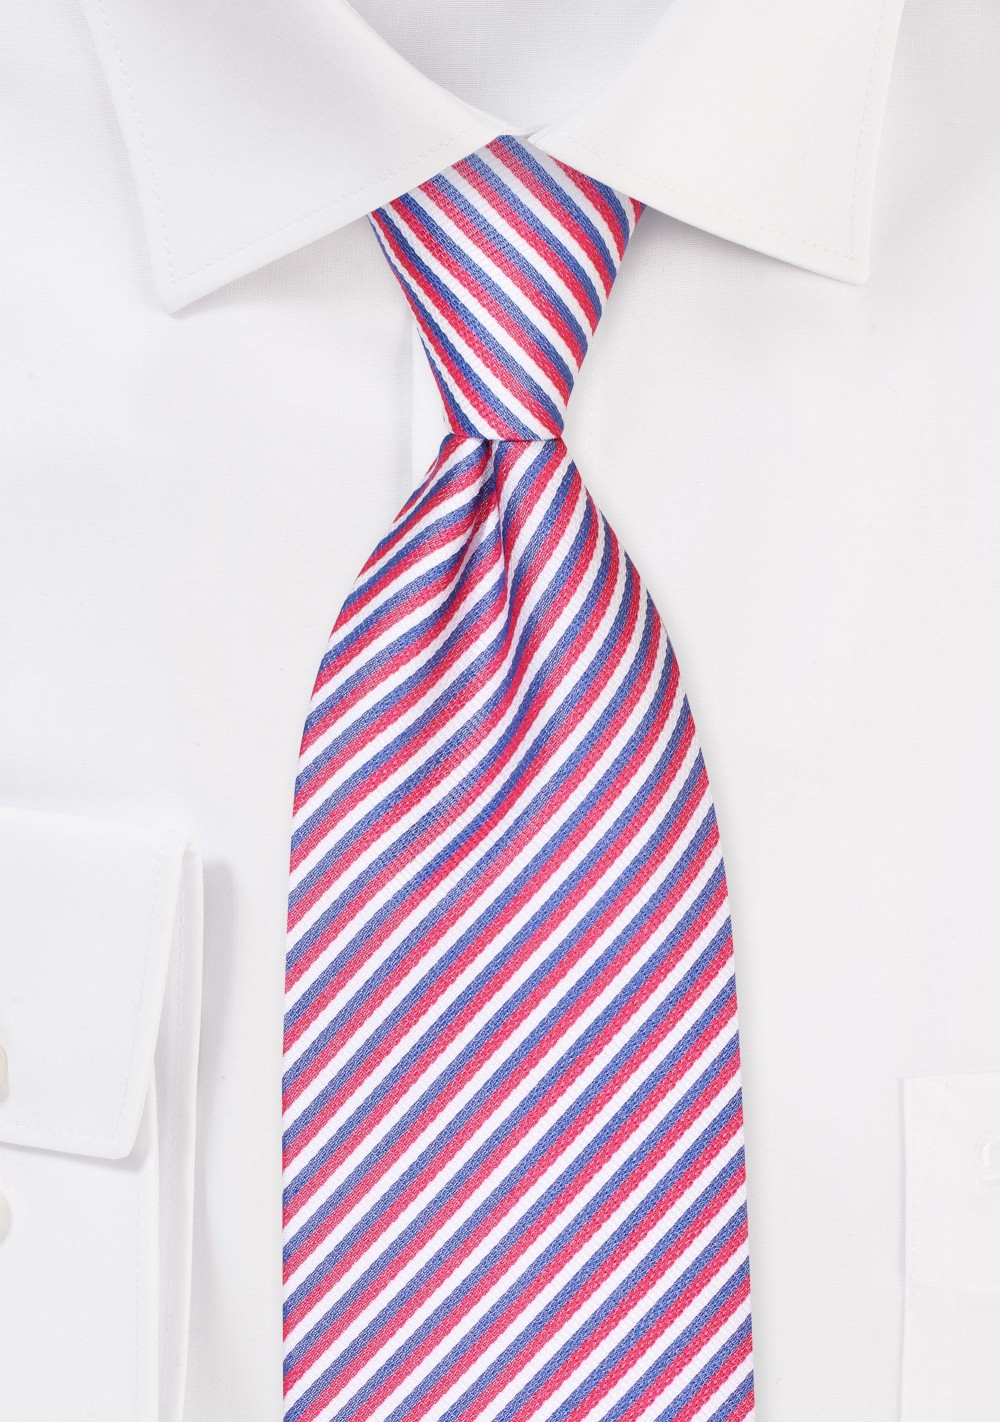 Thin Stripe XL Tie in Red, White, Blue